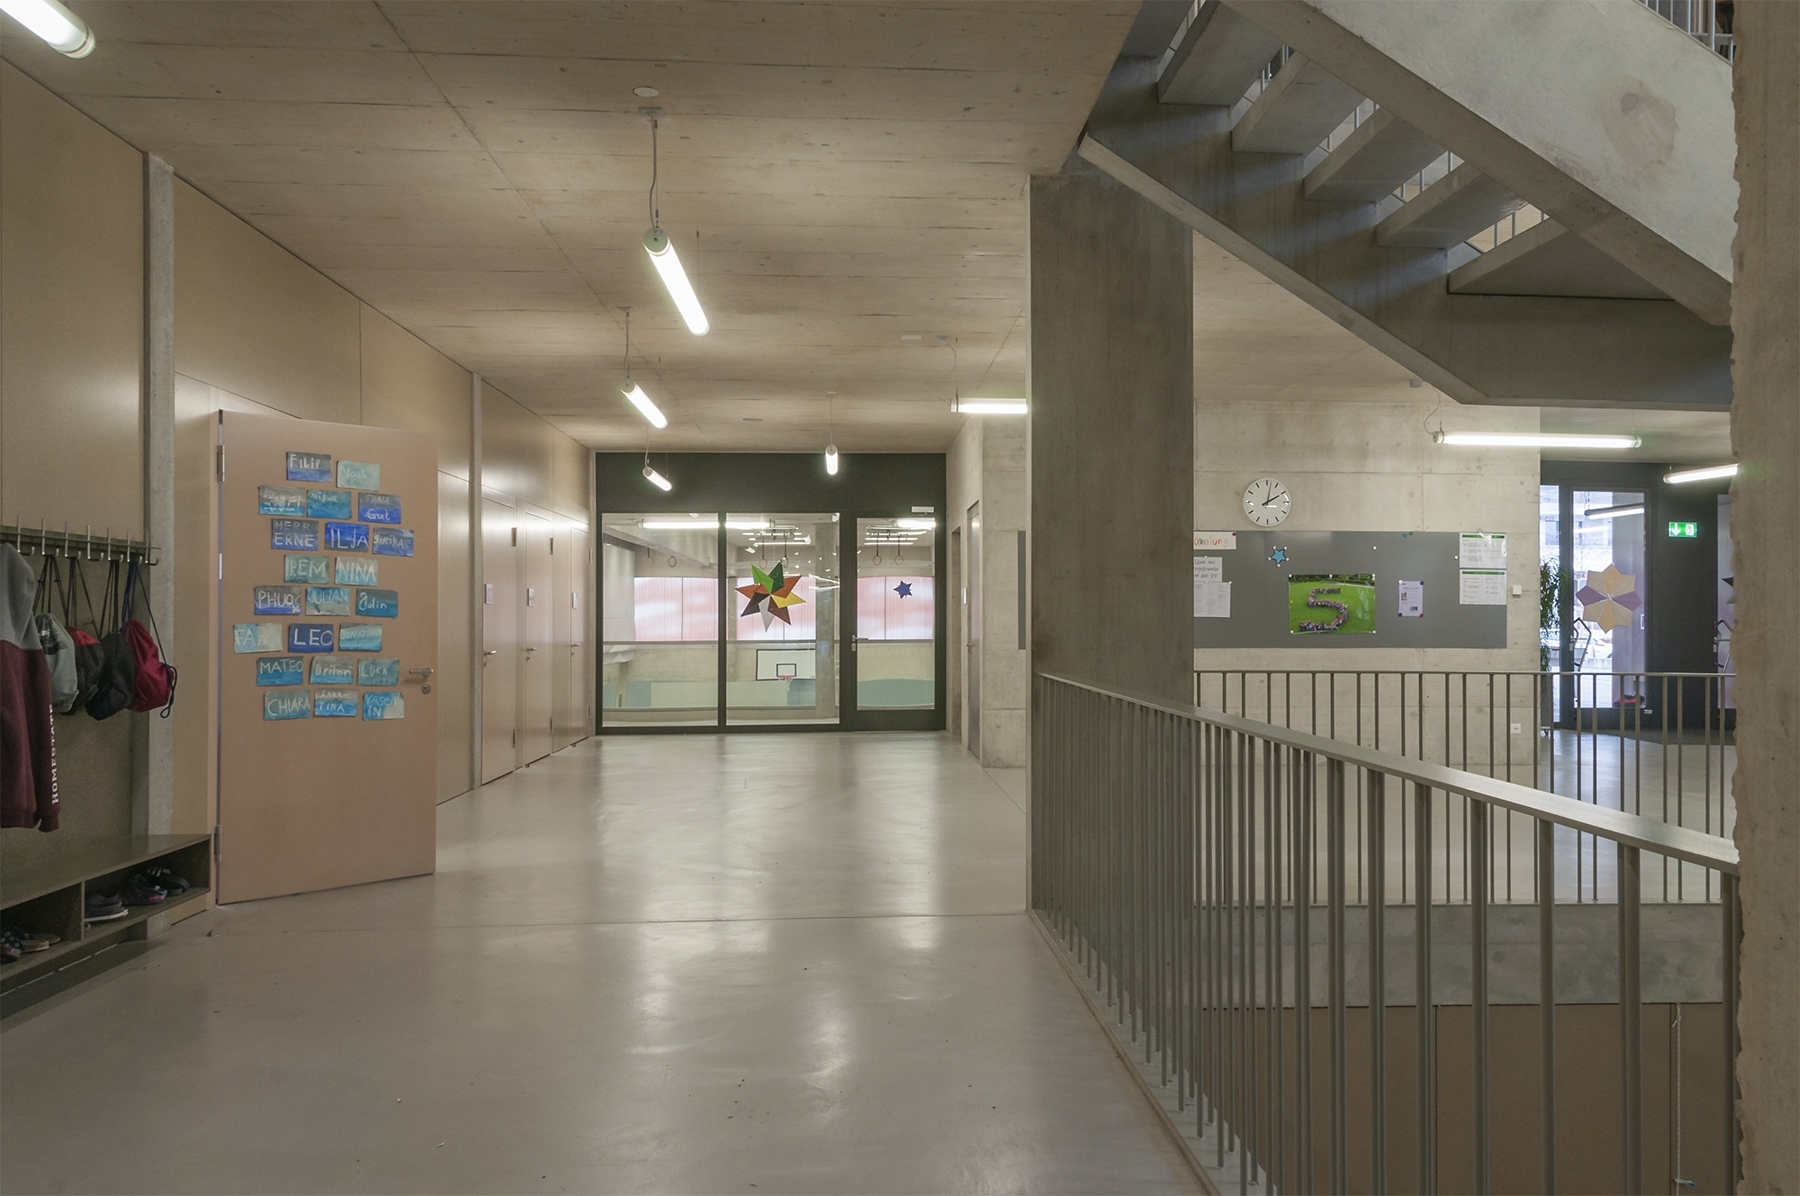 SCHULHAUS - WYDEN | Korridor mit LED Balkenleuchten